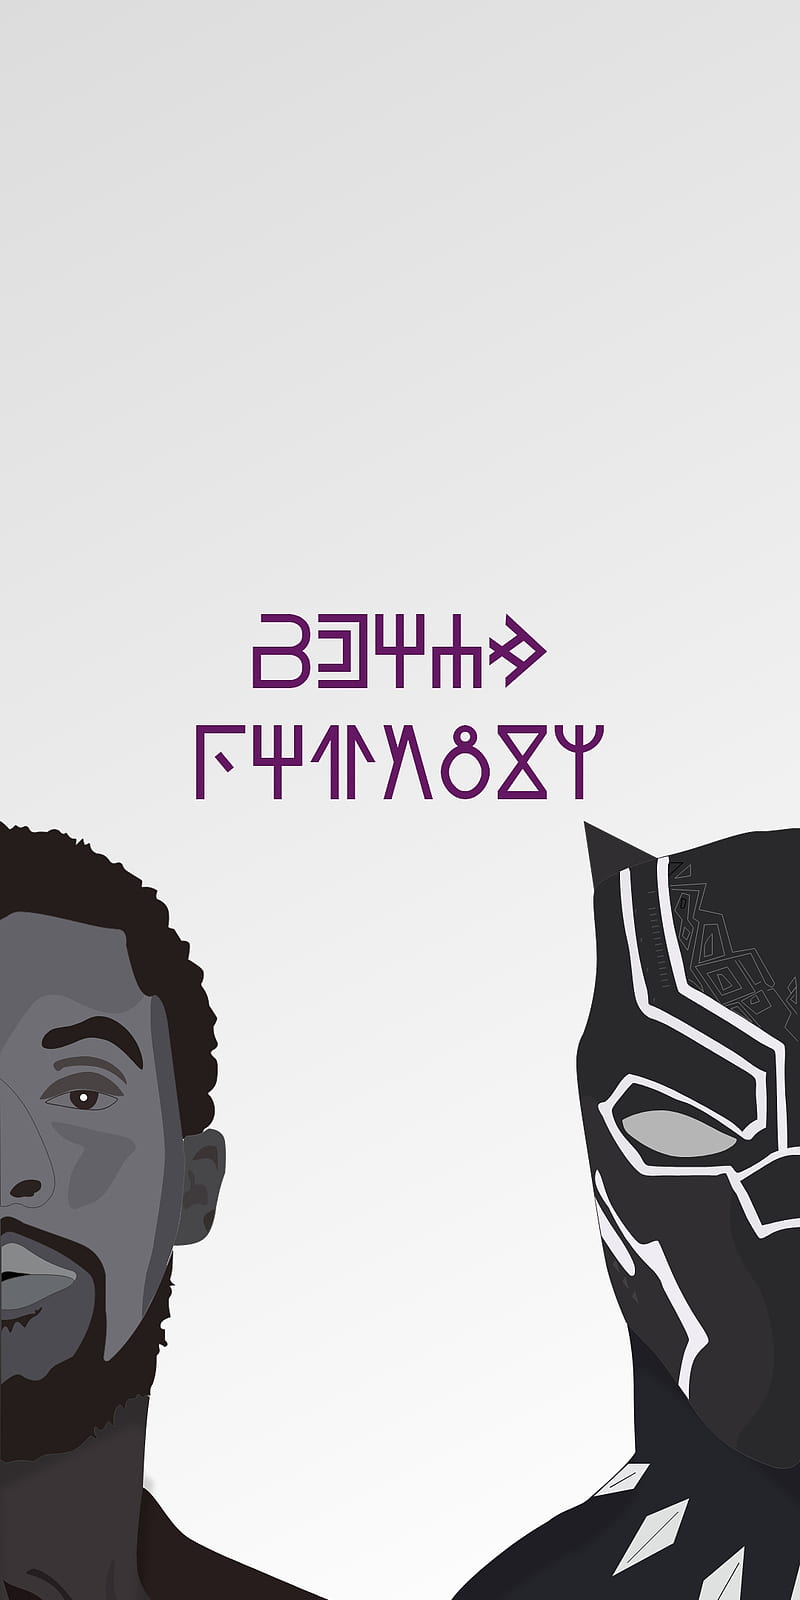 Black Panther x Chadwi, Black panther, awesome, chadwick boseman, marvel, solid, marvelmovies, wakanda, comics, cool, T'Challa, Avengers, mcu, HD phone wallpaper